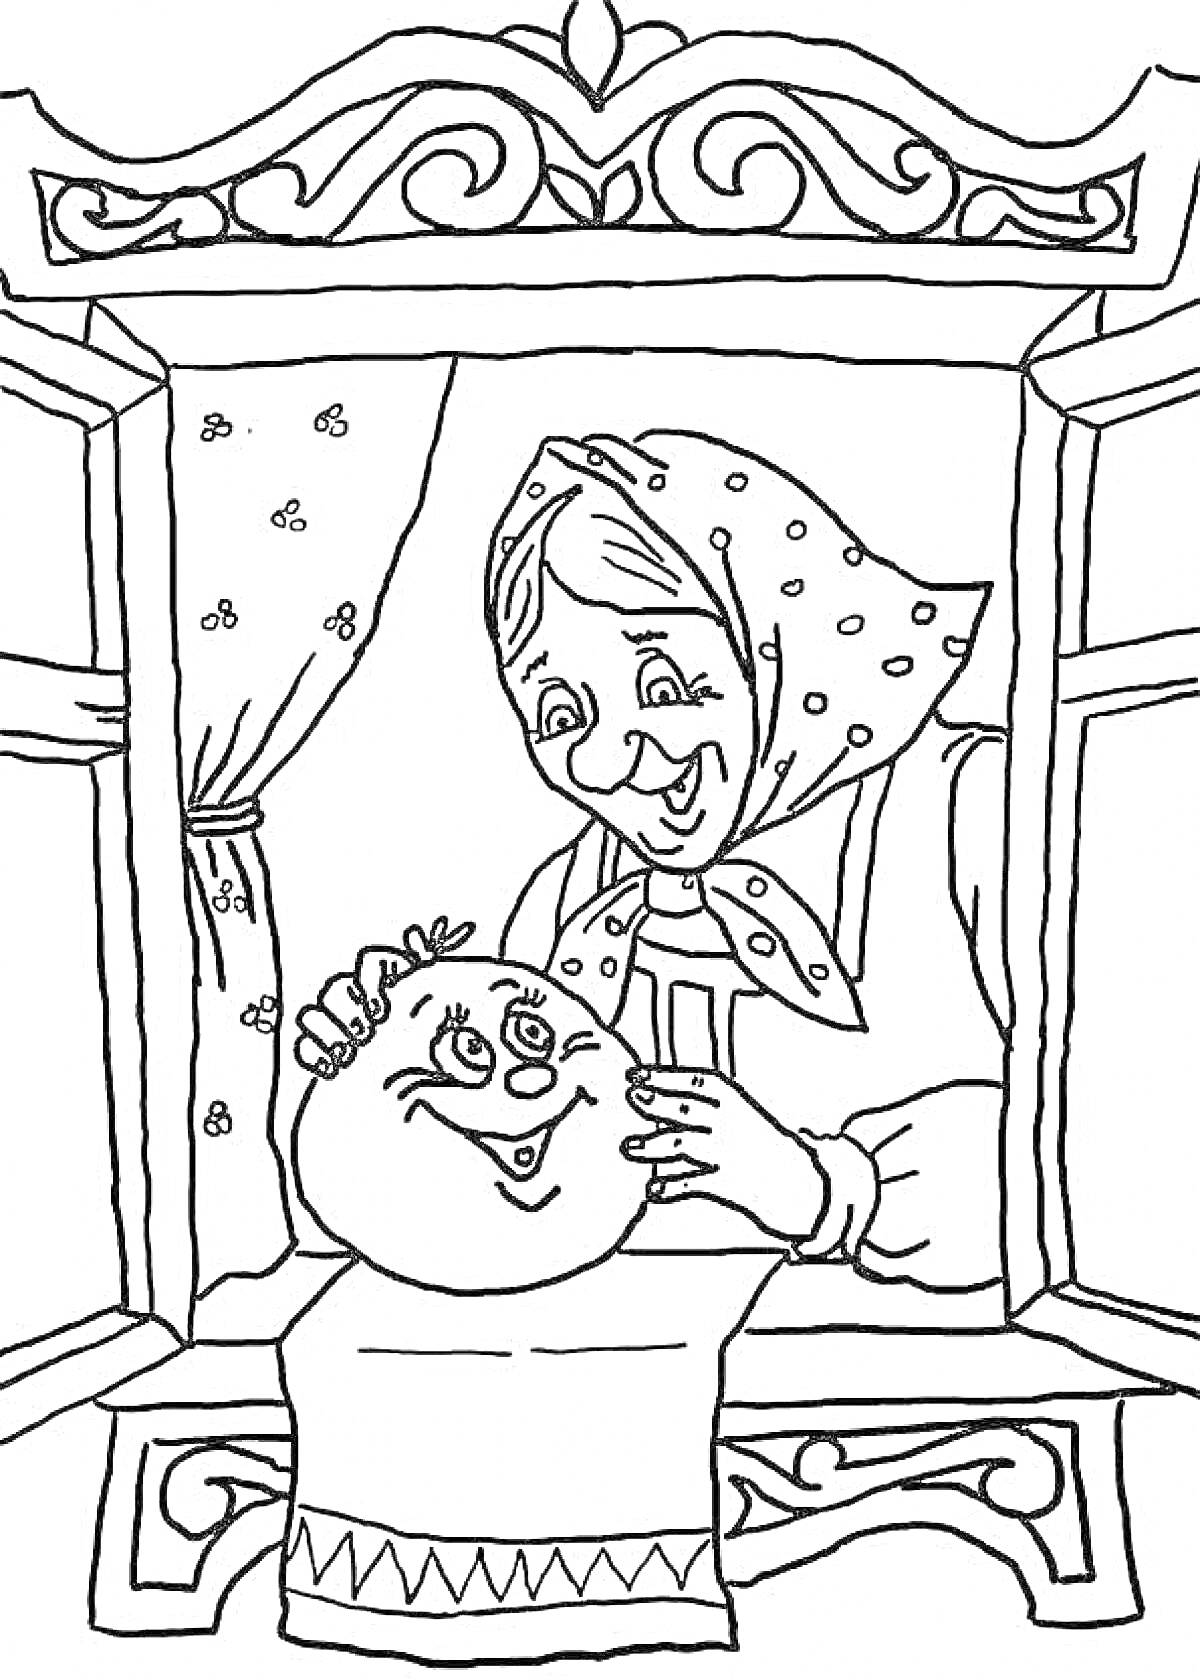 Раскраска Колобок и бабушка у окна